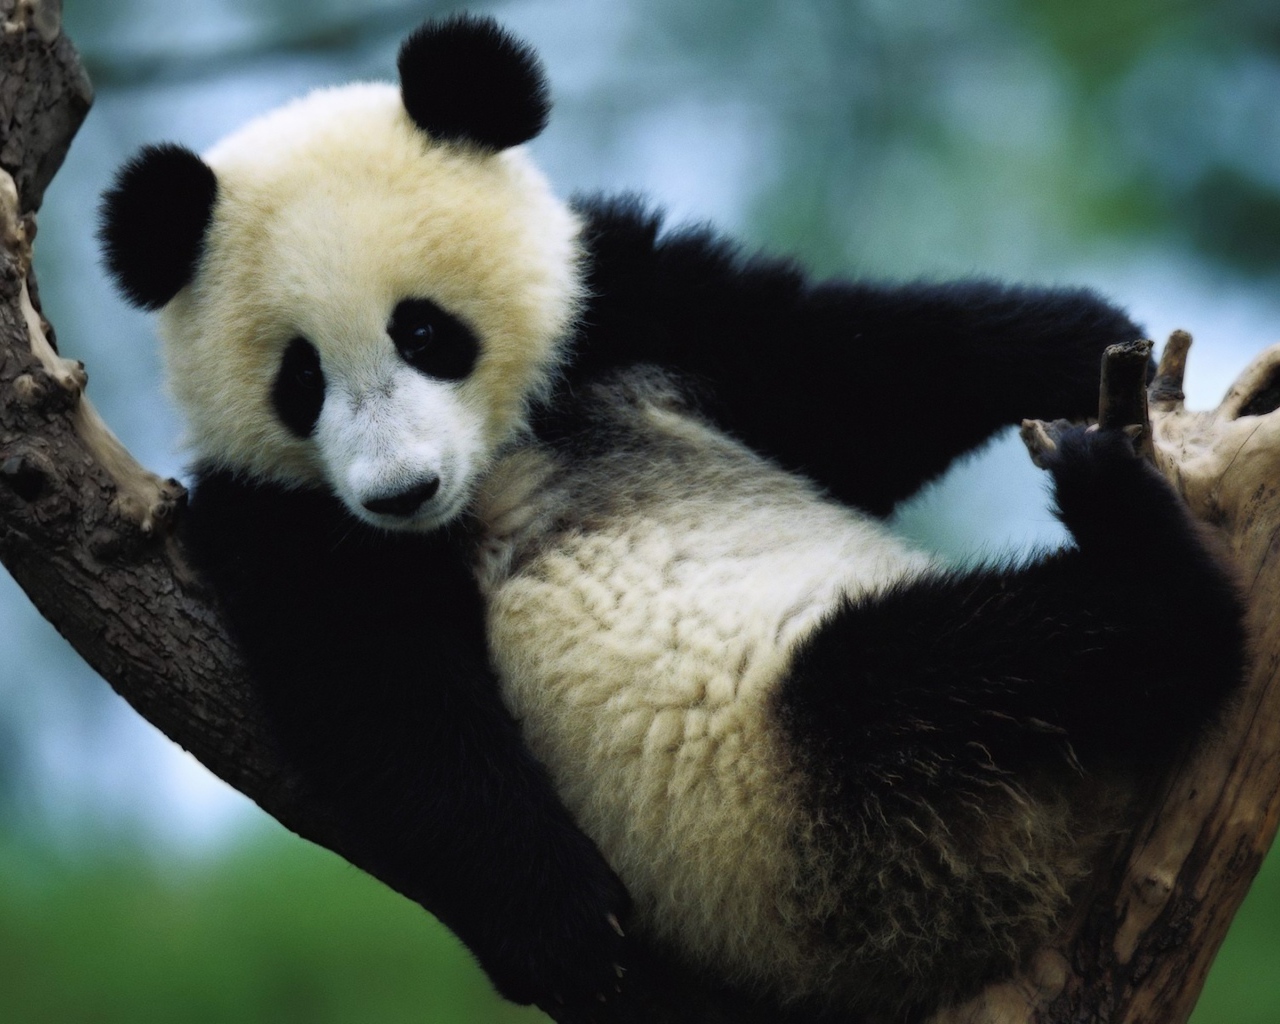 Панда сидит на дереве